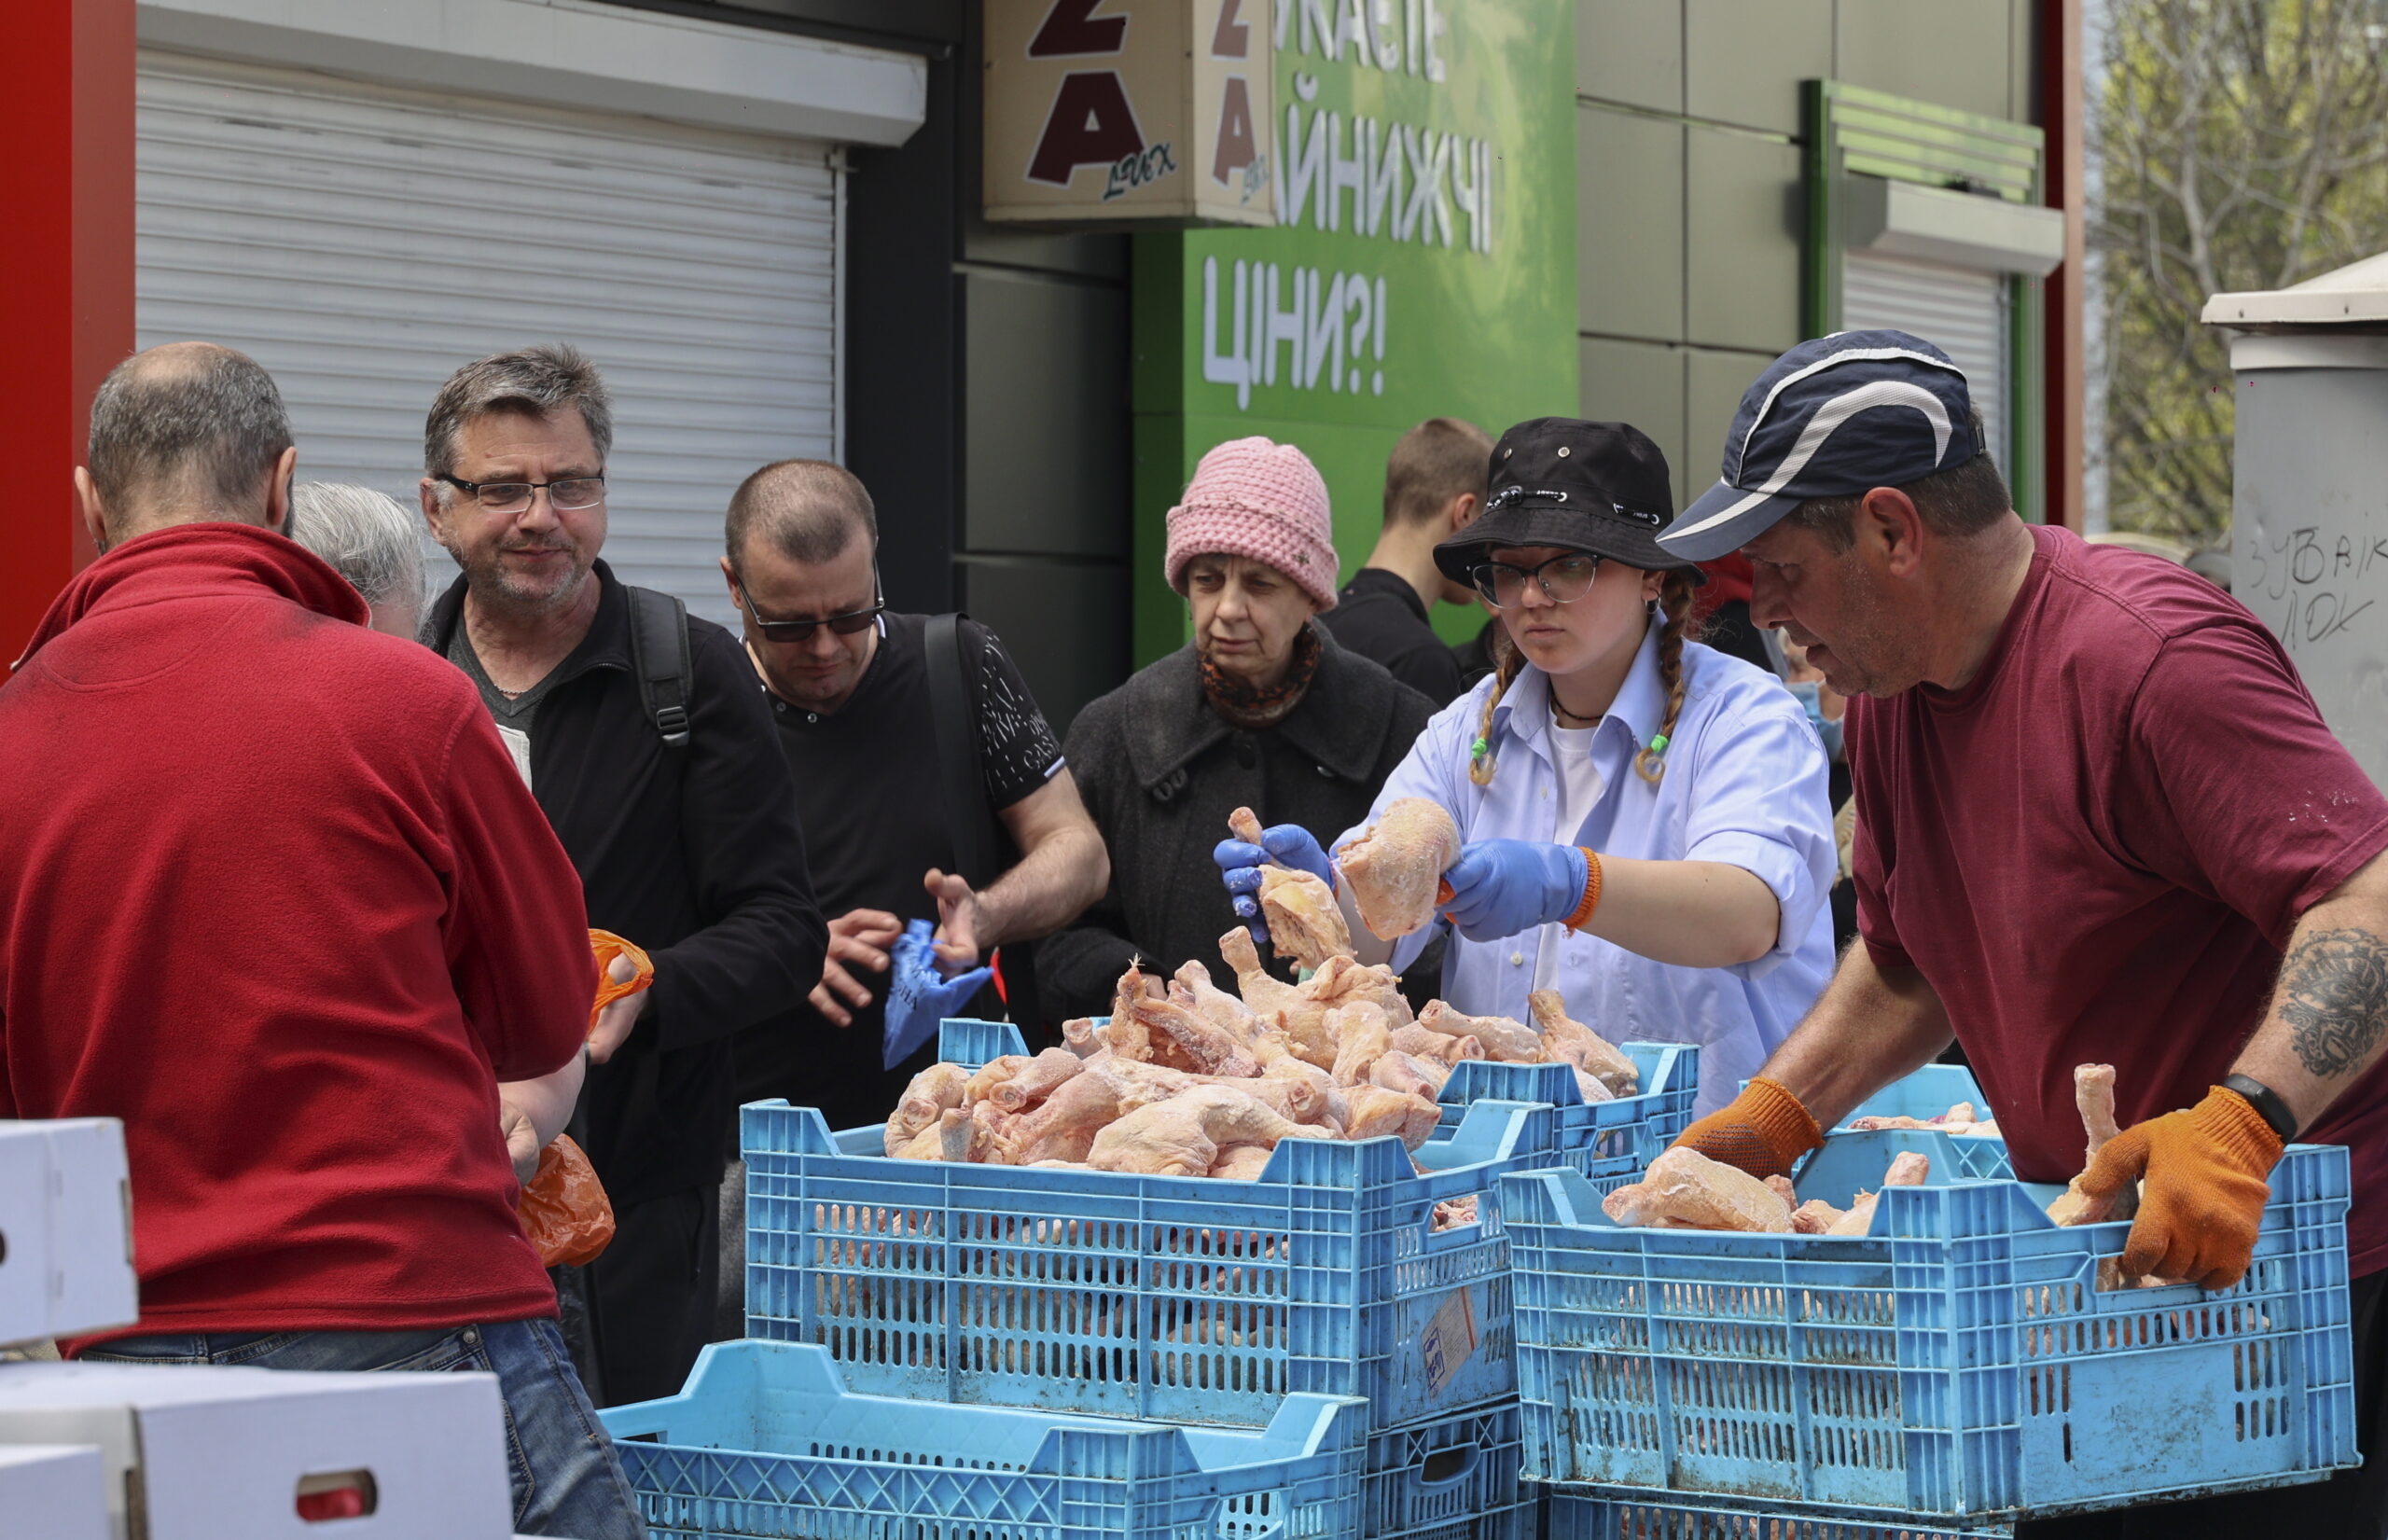 Местные жители стоят в очереди за куриным мясом, которое раздают в качестве гуманитарной помощи, по три штуки на человека. Харьков. 26 апреля 2022 года. Фото EPA/SERGEY KOZLOV/Scanpix/LETA